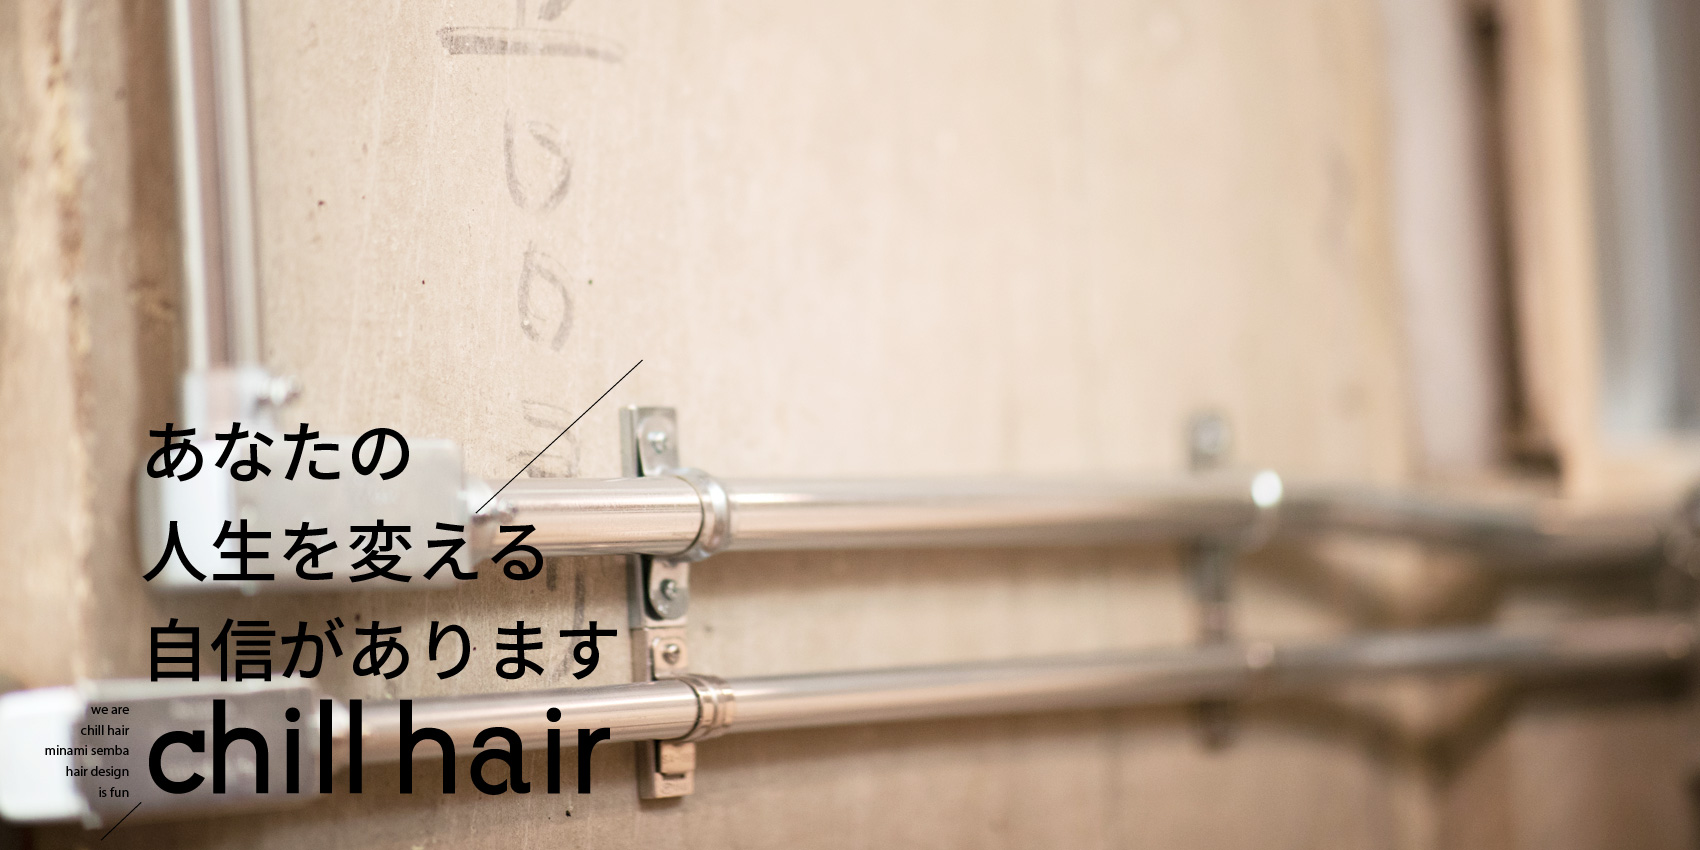 大阪市南船場四丁目 美容室 chill hair チルヘアー あなたの人生を変える自信があります